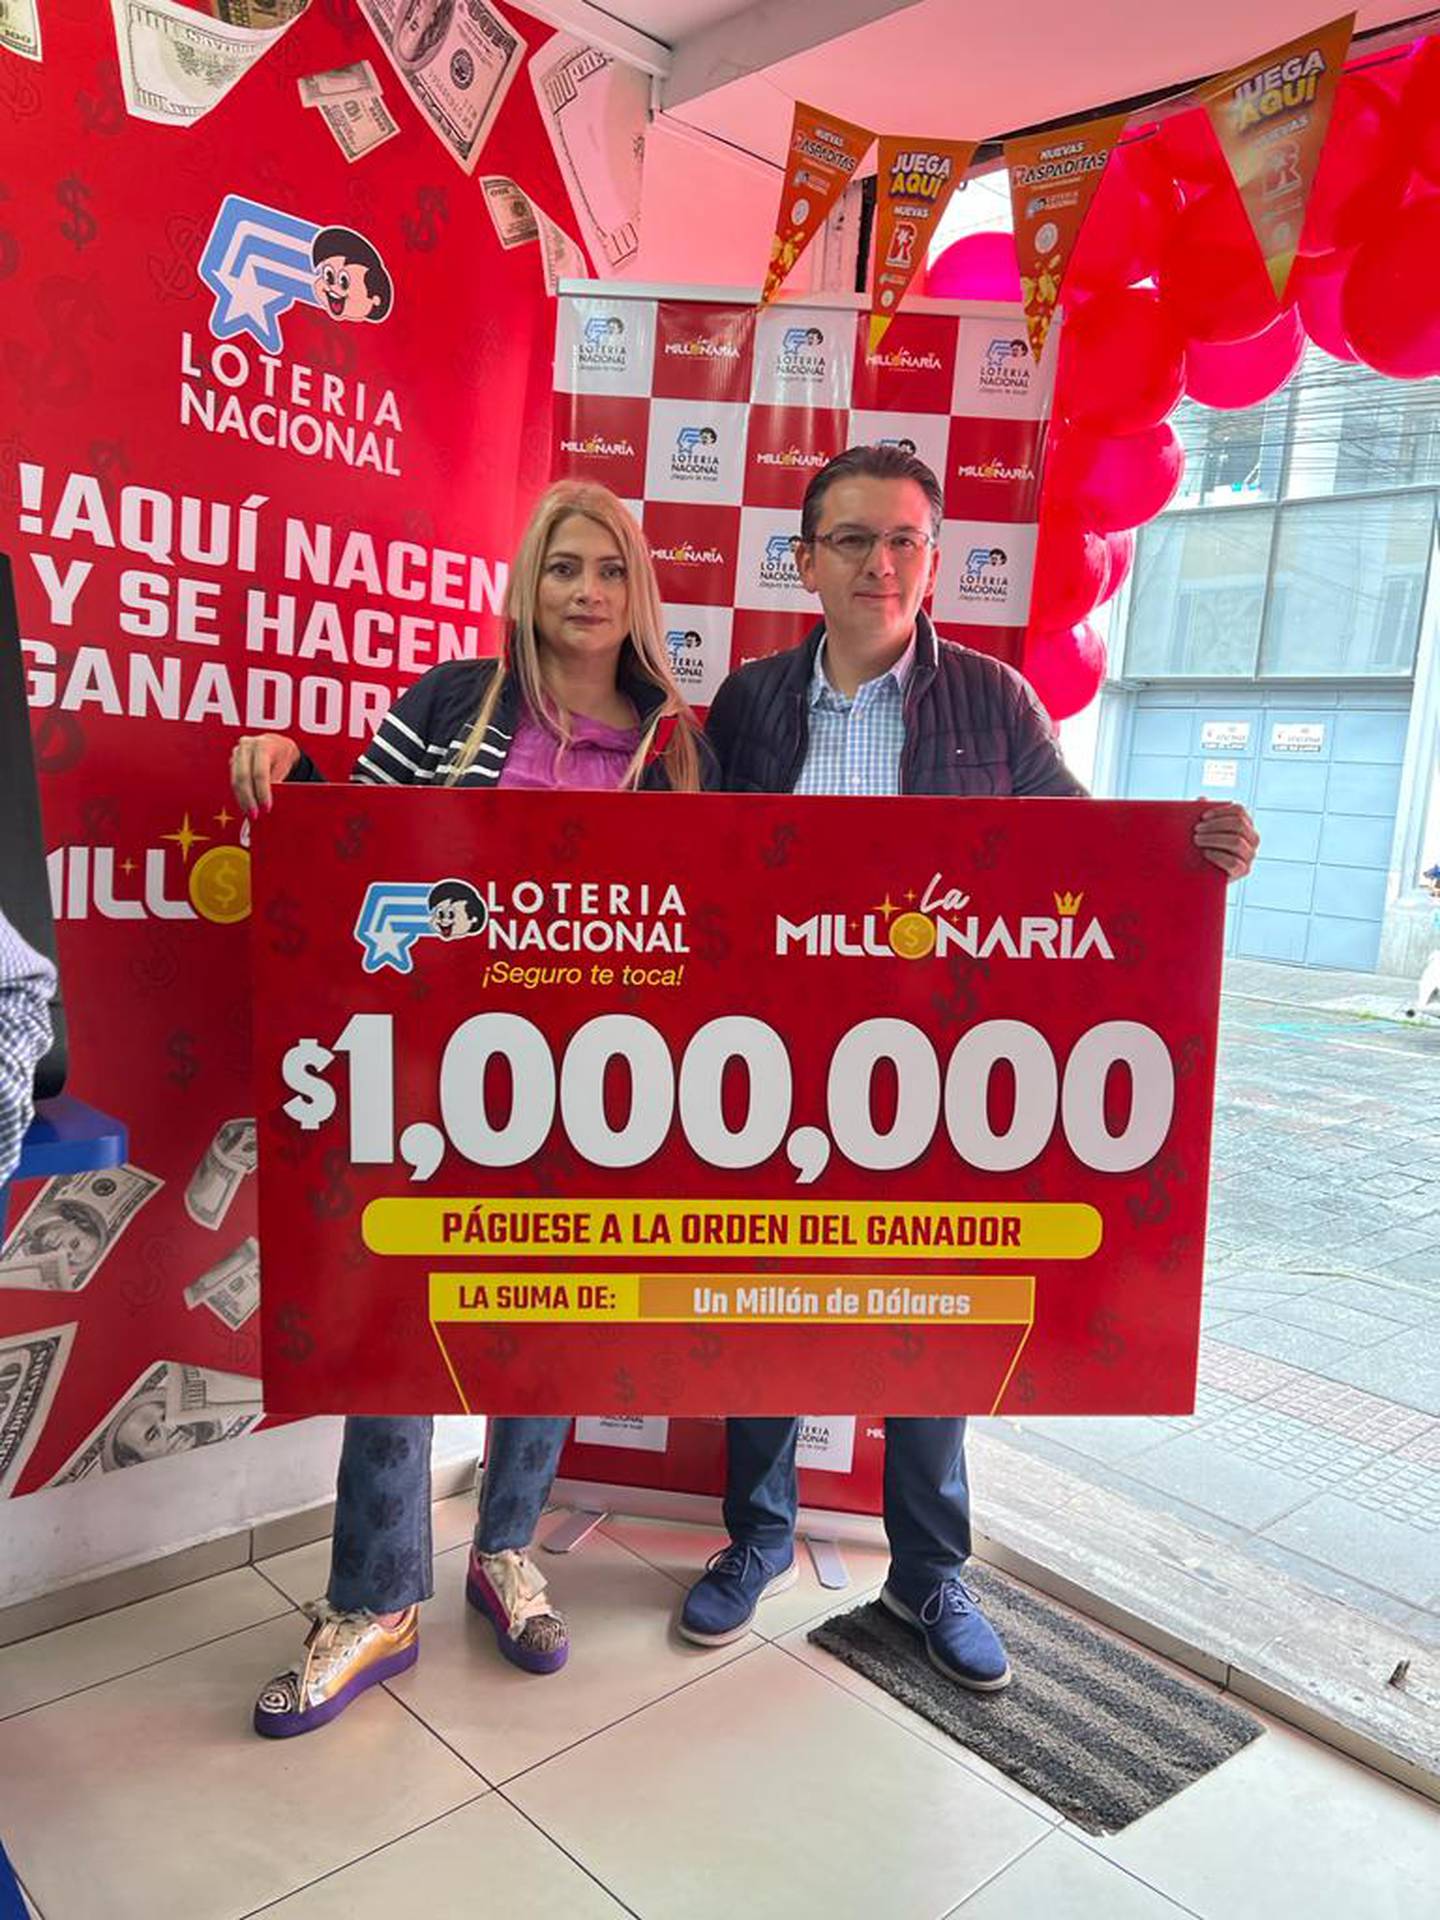 Beatriz Henao, Gerente de Mercadeo de Lotería Nacional y Ronald Trujillo, Jefe Regional de Ventas Lotería Nacional